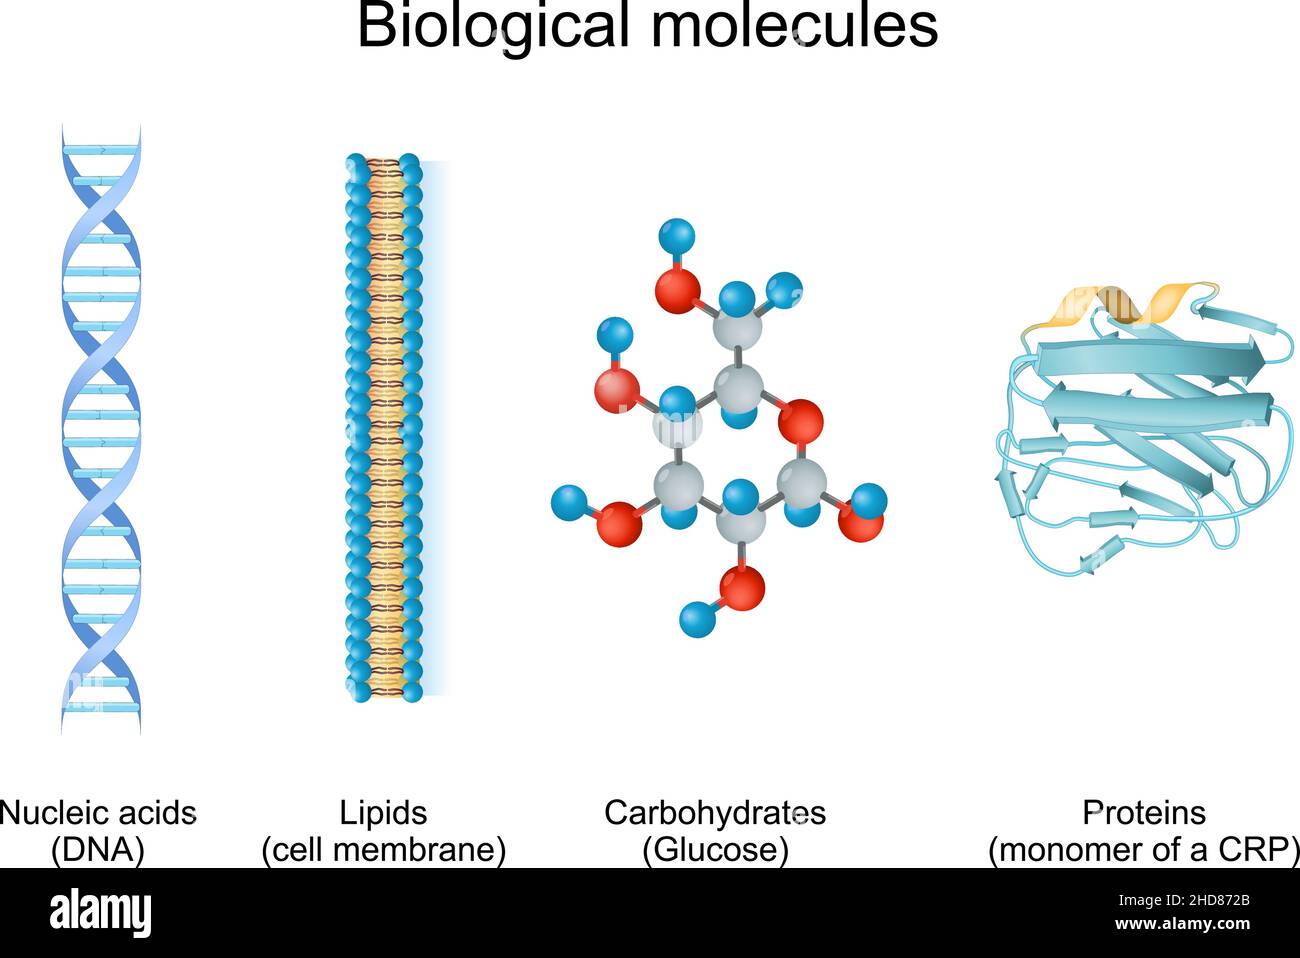 la biomolécule est une molécule présente dans les organismes vivants.Types de molécules biologiques : glucides, lipides, acides nucléiques et protéines Illustration de Vecteur